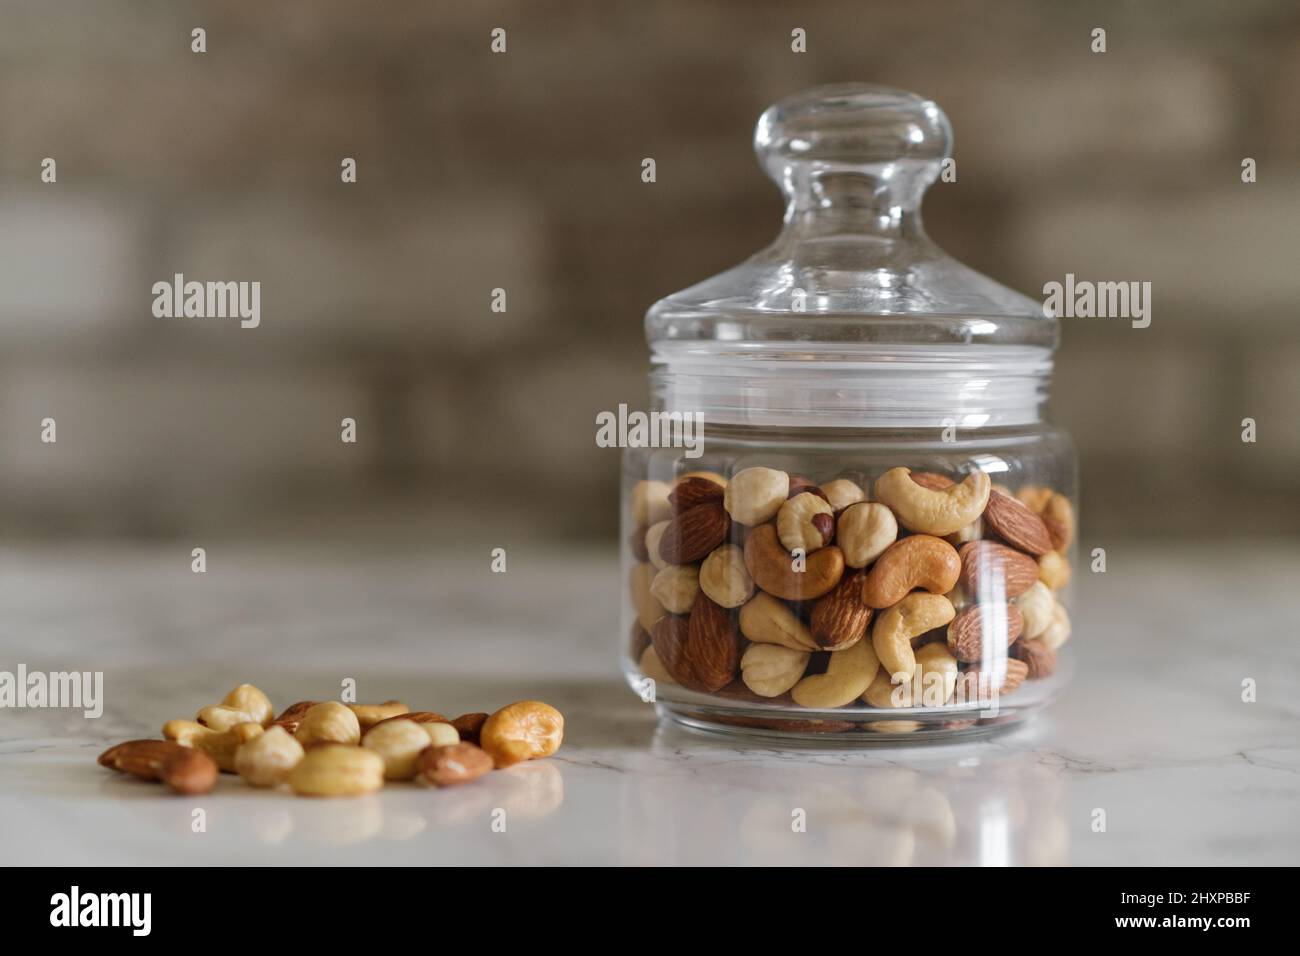 Mischen Sie Nüsse in einem transparenten Behälter, Cashewkerne, Mandeln, Haselnüsse Stockfoto